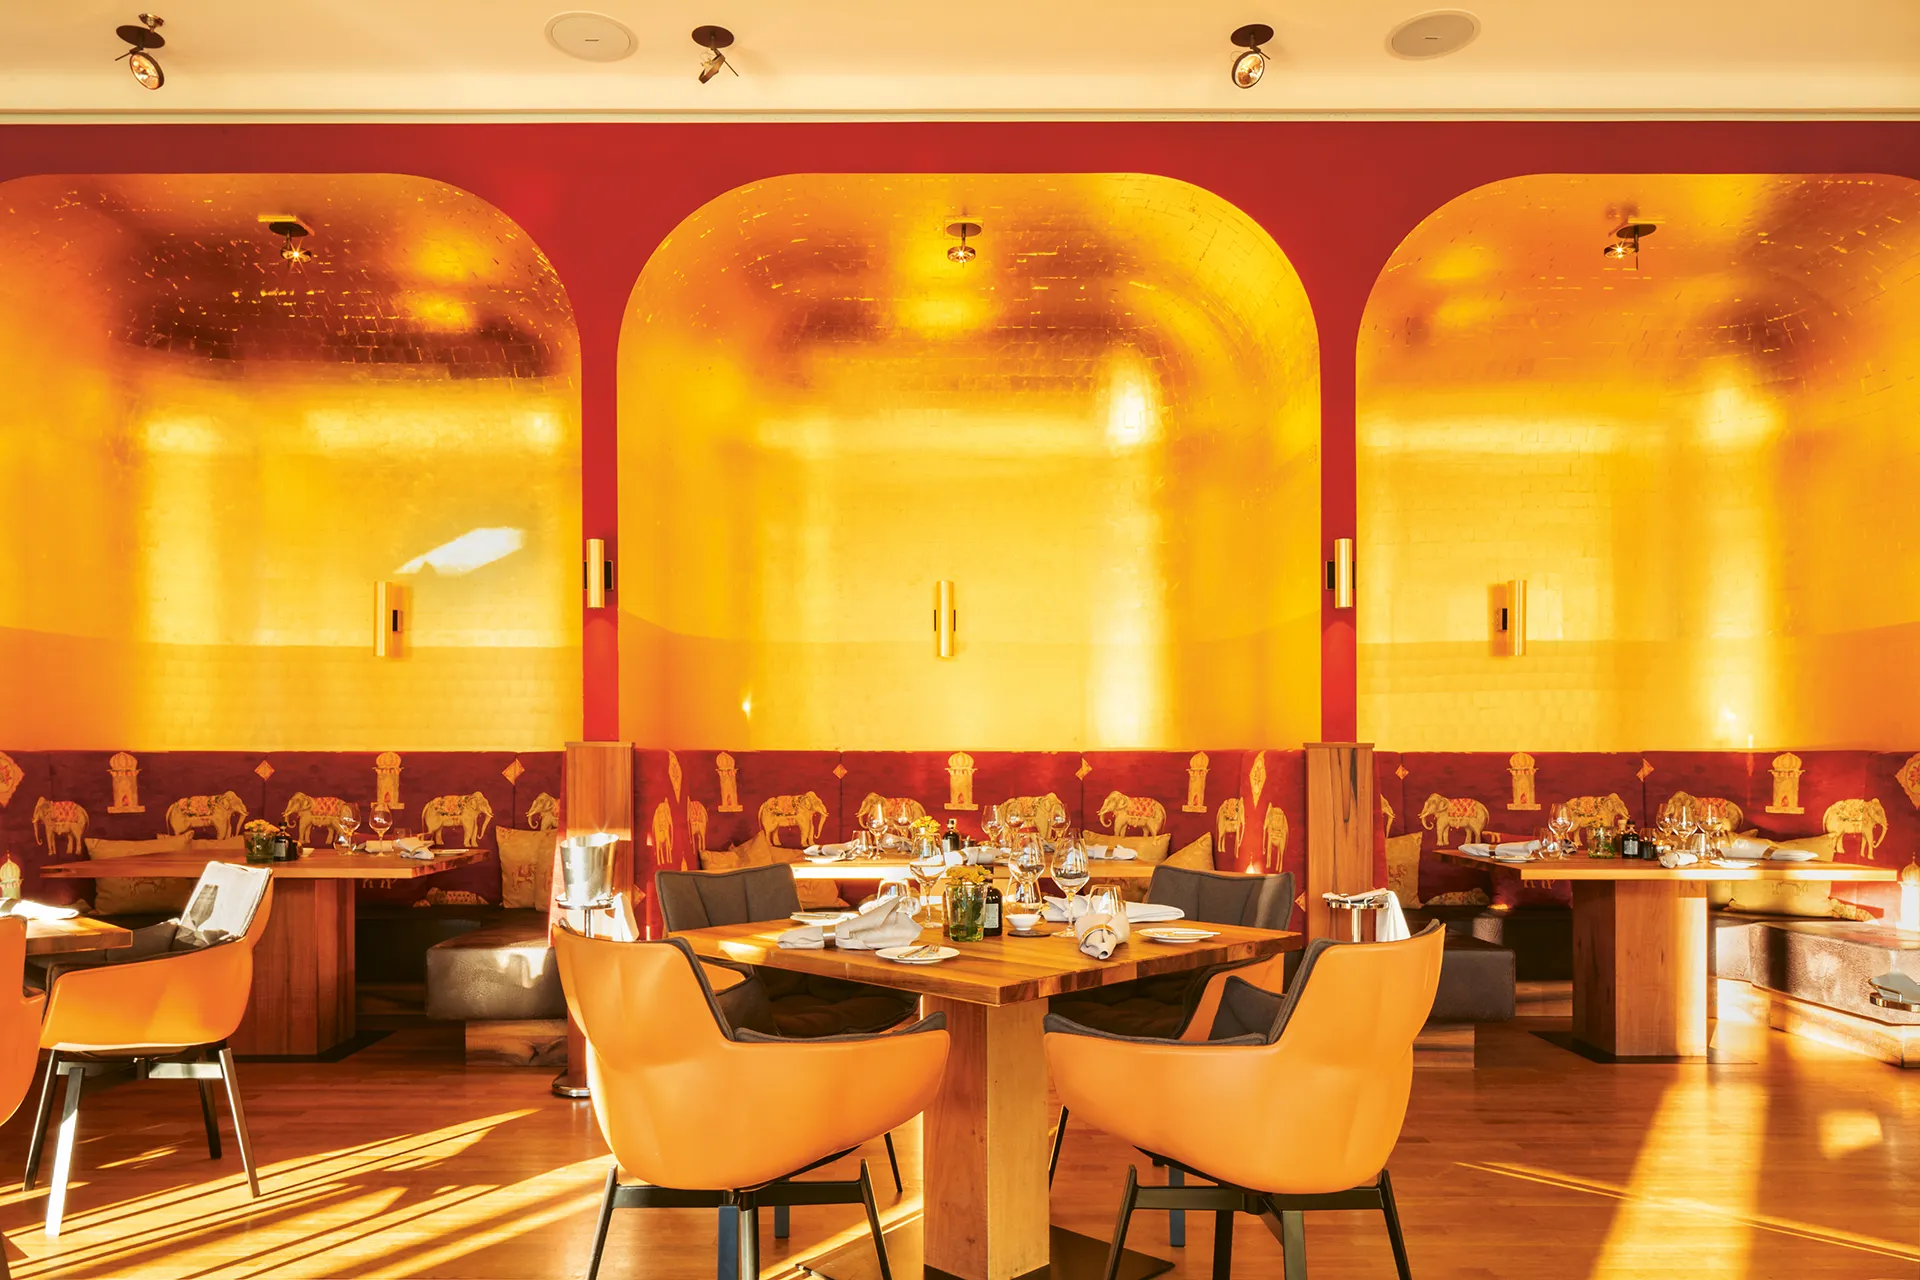 Restaurant mit vergoldeten Sitzbereichen